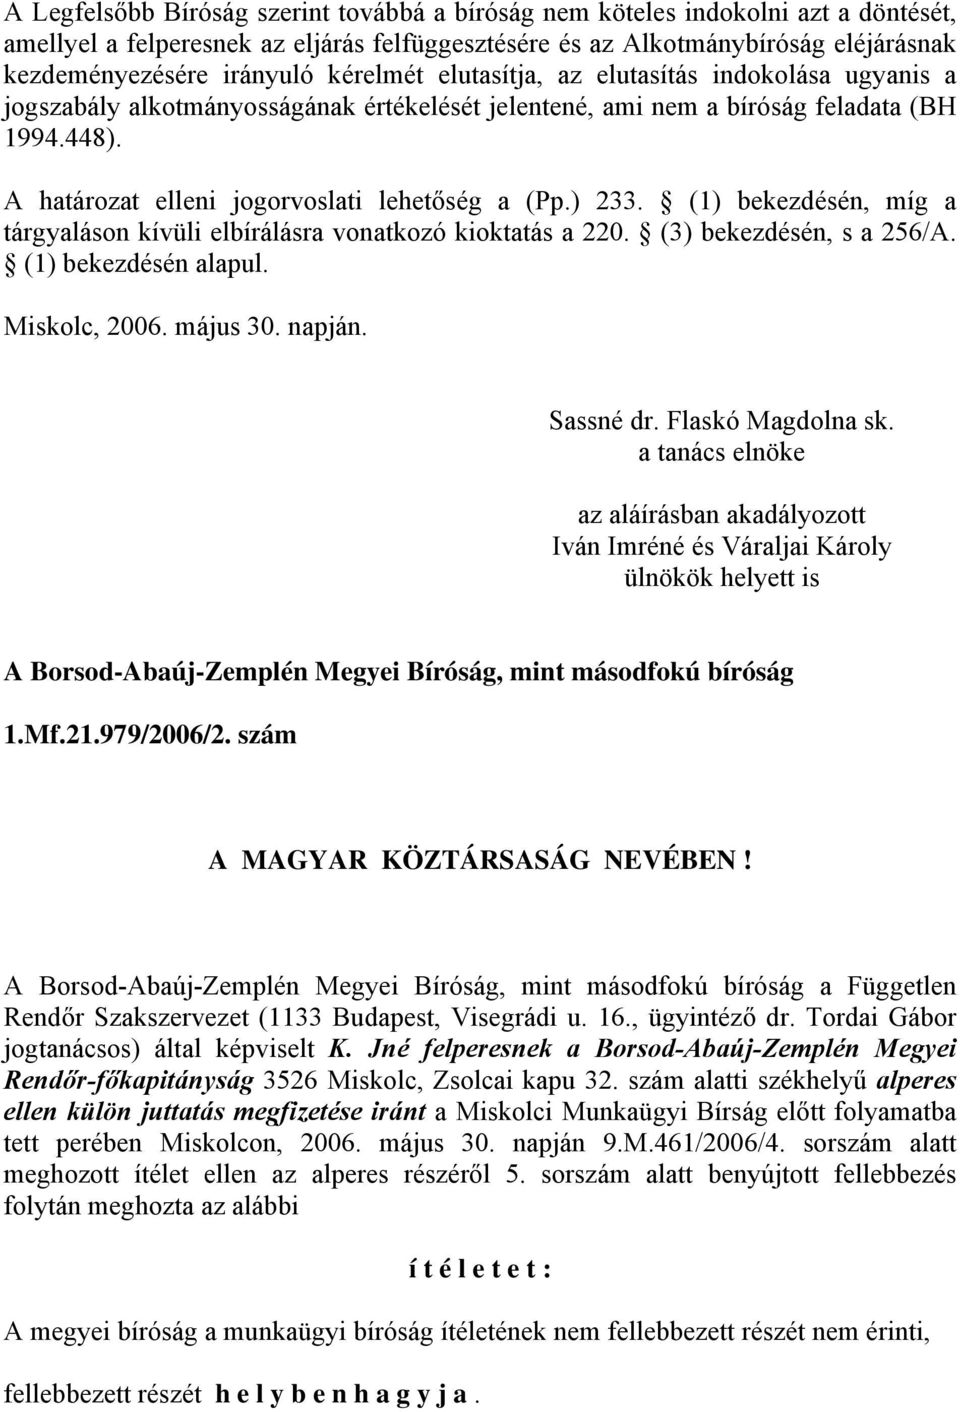 ) 233. (1) bekezdésén, míg a tárgyaláson kívüli elbírálásra vonatkozó kioktatás a 220. (3) bekezdésén, s a 256/A. (1) bekezdésén alapul. Miskolc, 2006. május 30. napján. Sassné dr. Flaskó Magdolna sk.